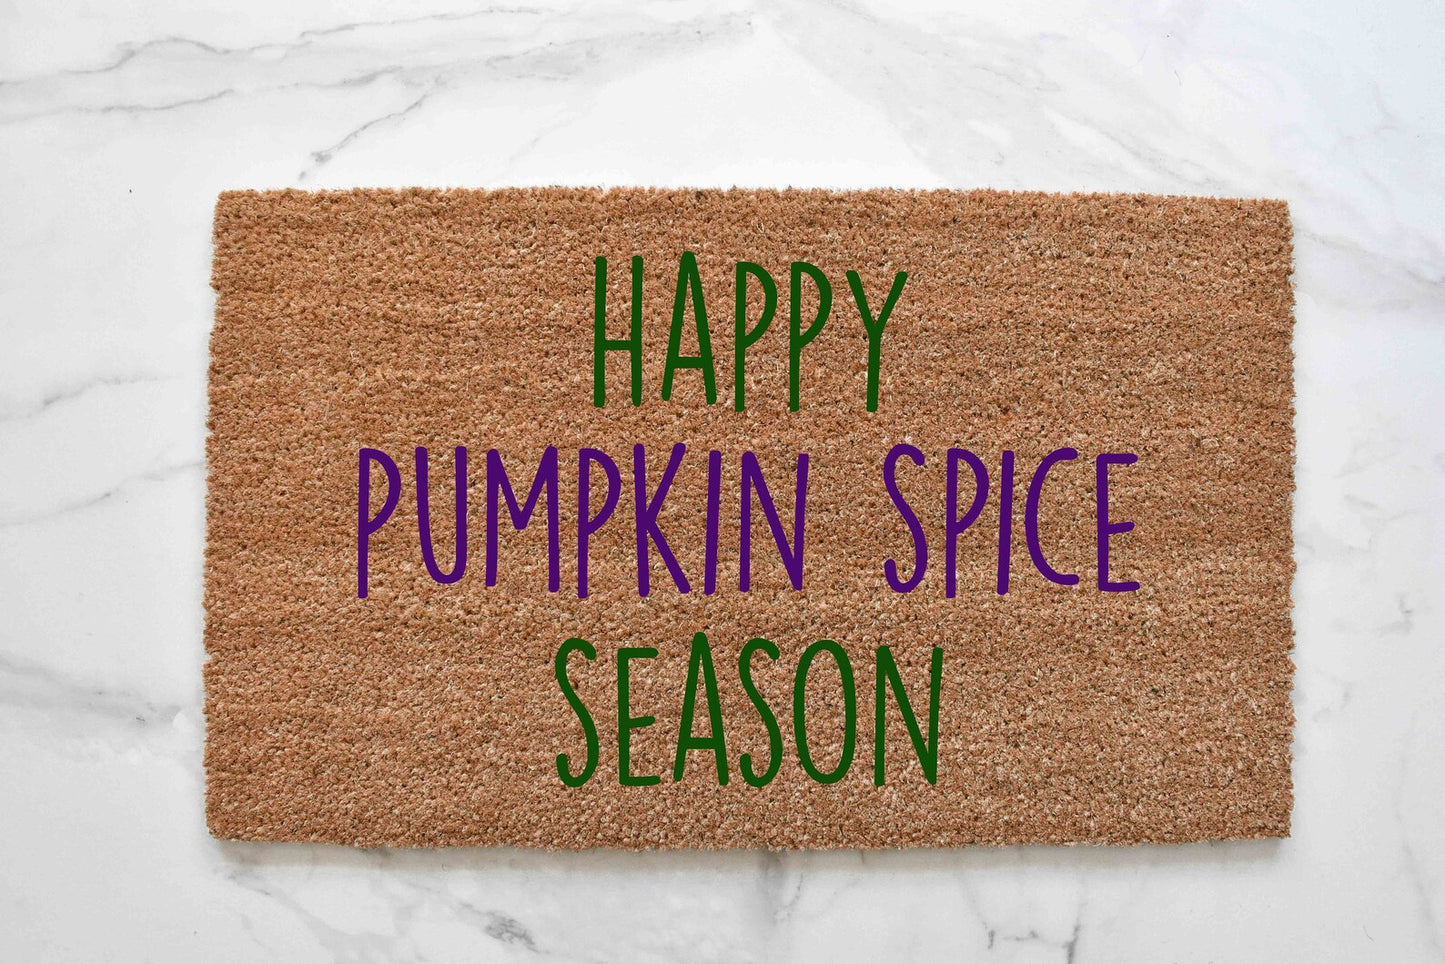 Happy Pumpkin Spice Season Doormat